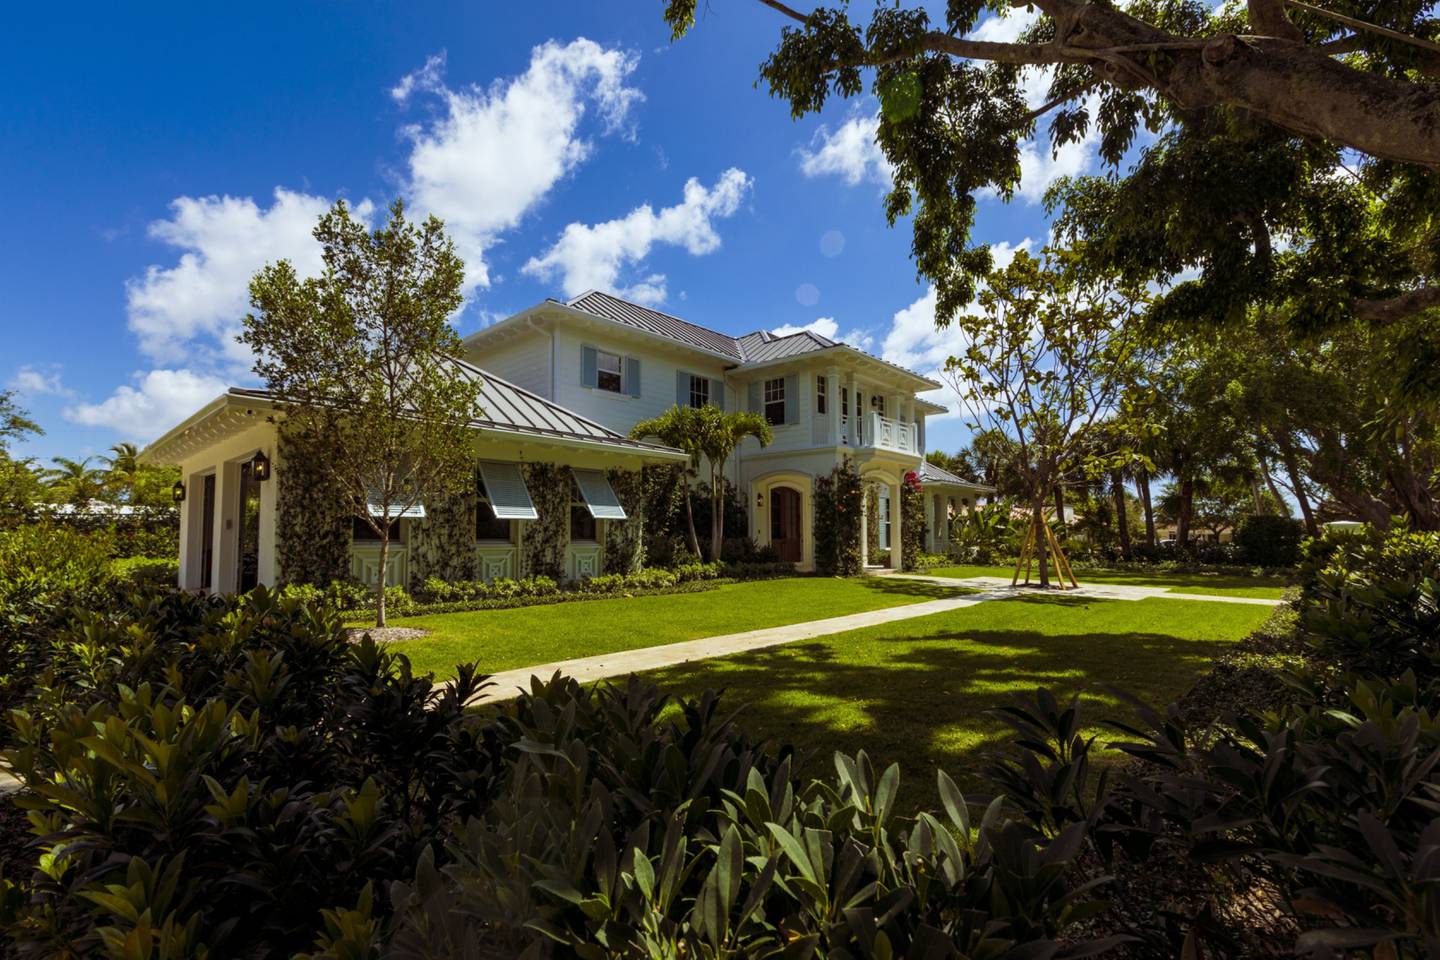 Una nueva casa de lujo en el barrio South of Southern (SoSo) de West Palm Beach, Florida, Estados Unidos, el martes 26 de abril de 2022.